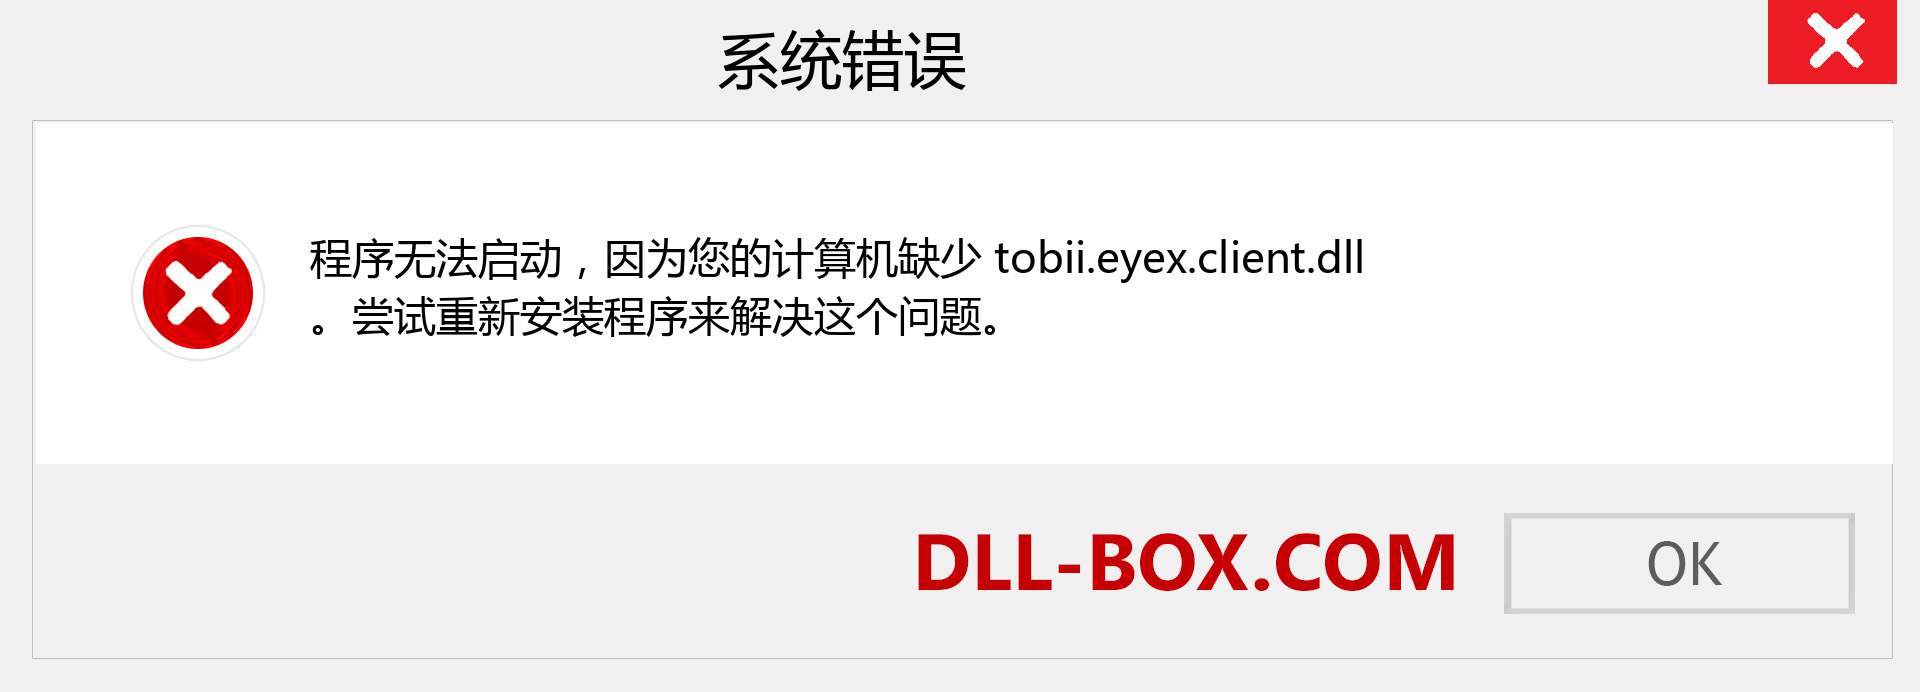 tobii.eyex.client.dll 文件丢失？。 适用于 Windows 7、8、10 的下载 - 修复 Windows、照片、图像上的 tobii.eyex.client dll 丢失错误